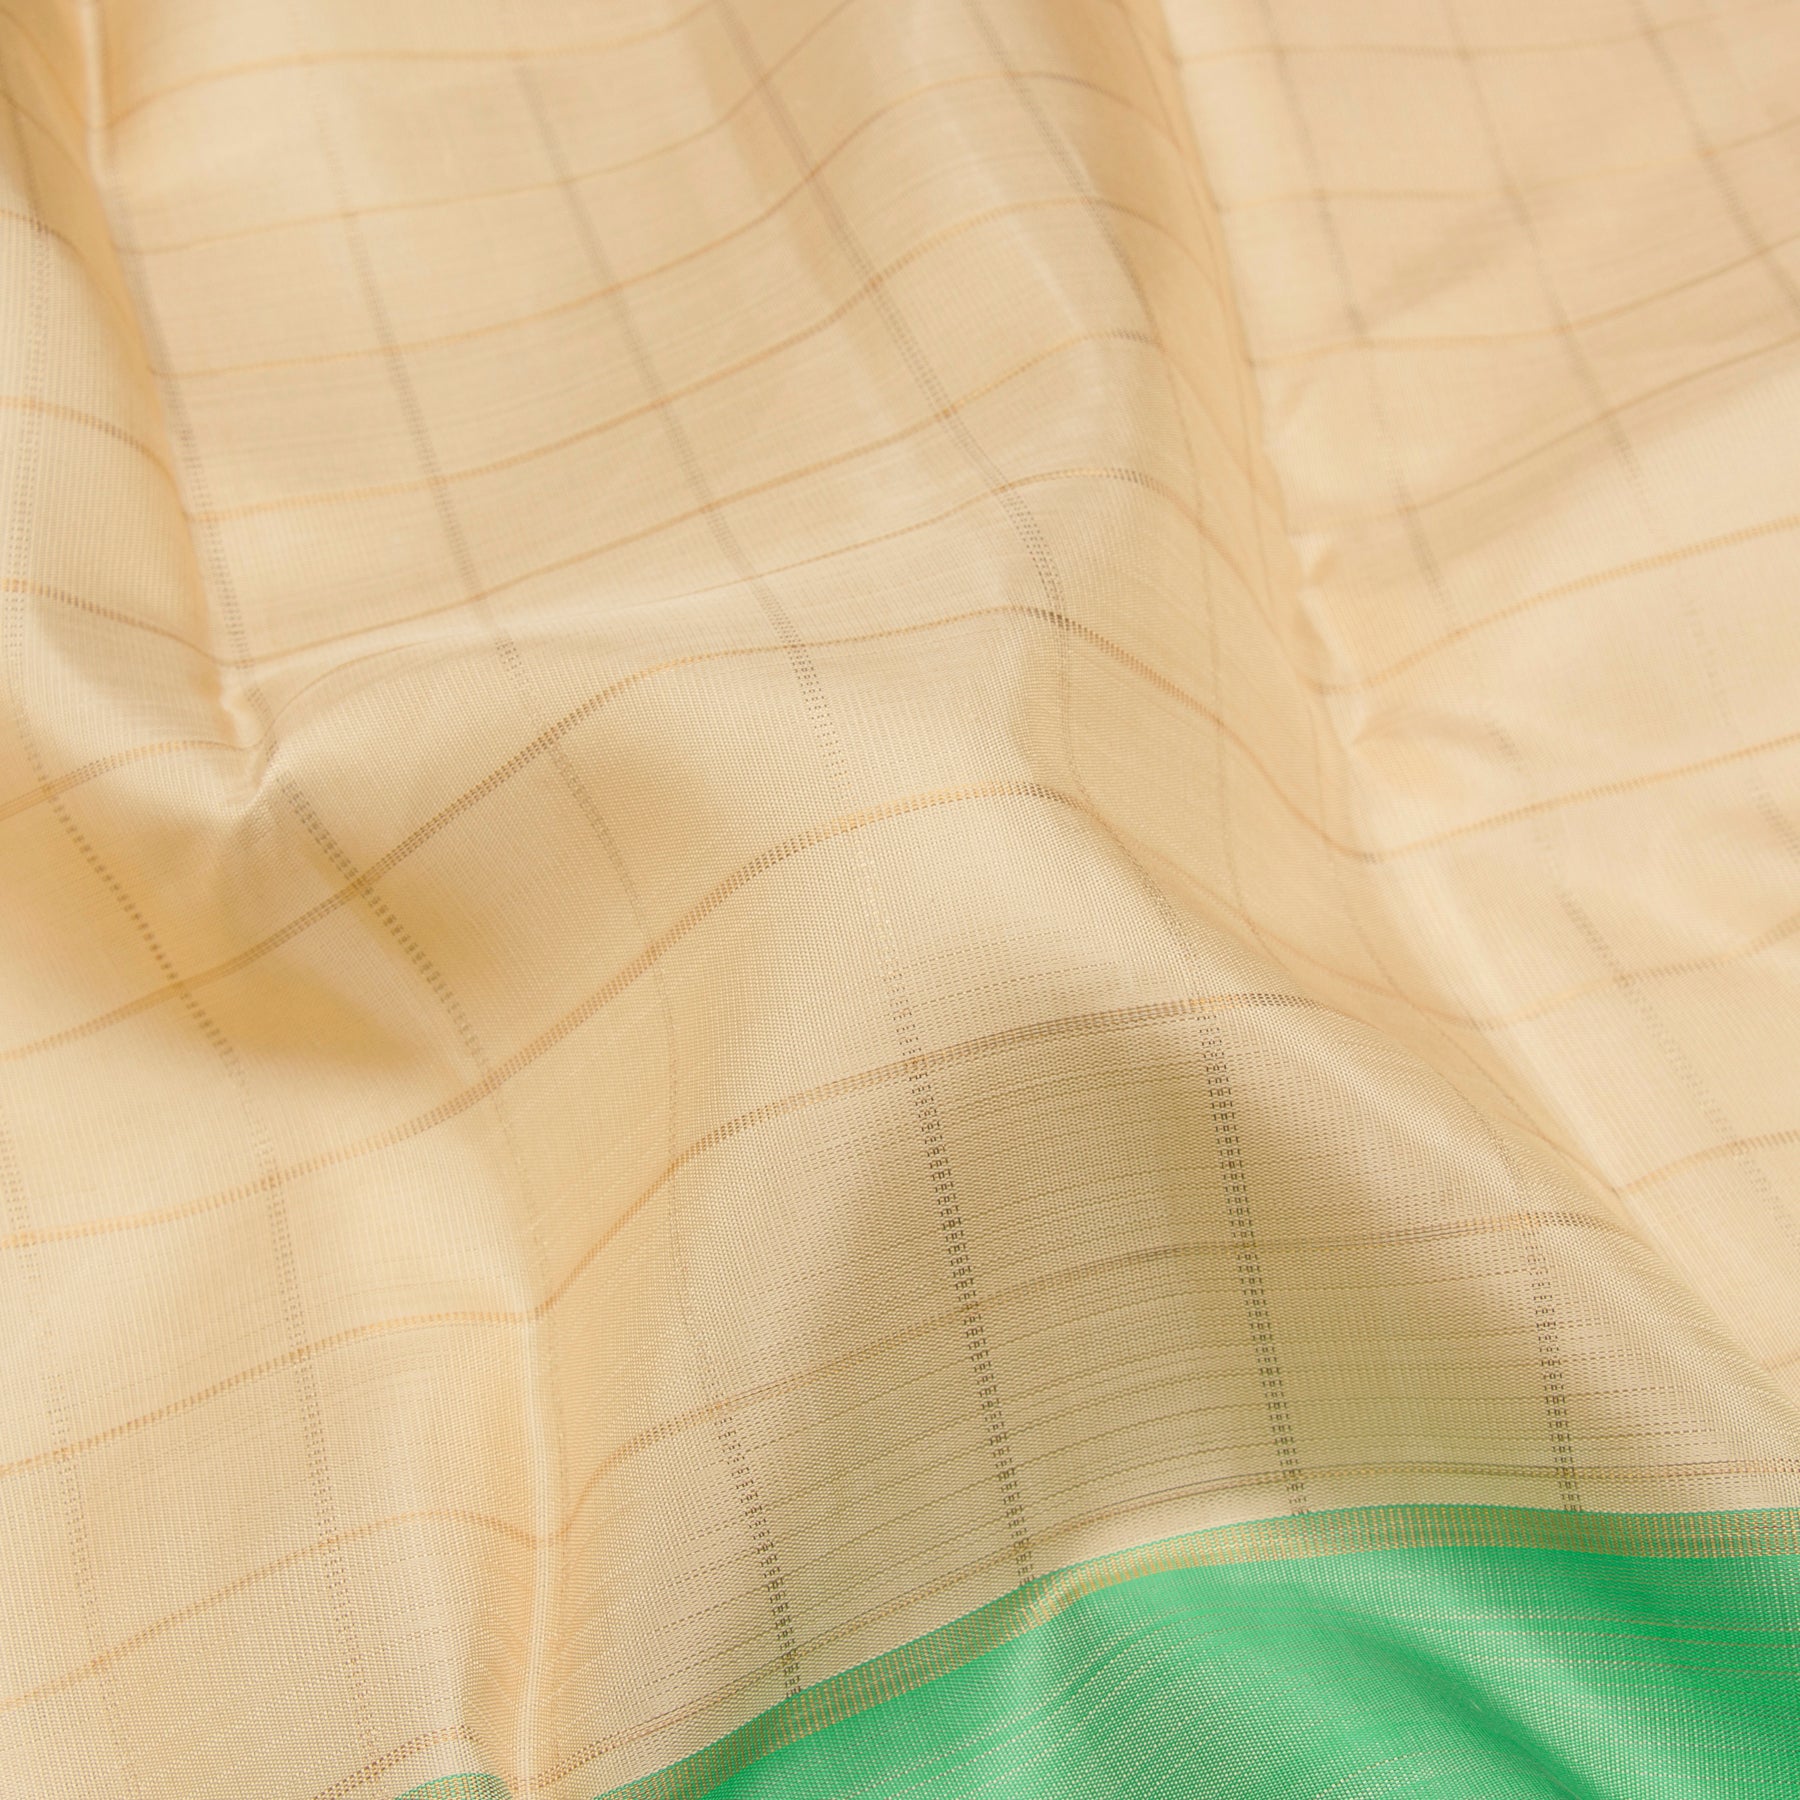 Kanakavalli Kanjivaram Silk Sari 23-595-HS001-12119 - Fabric View